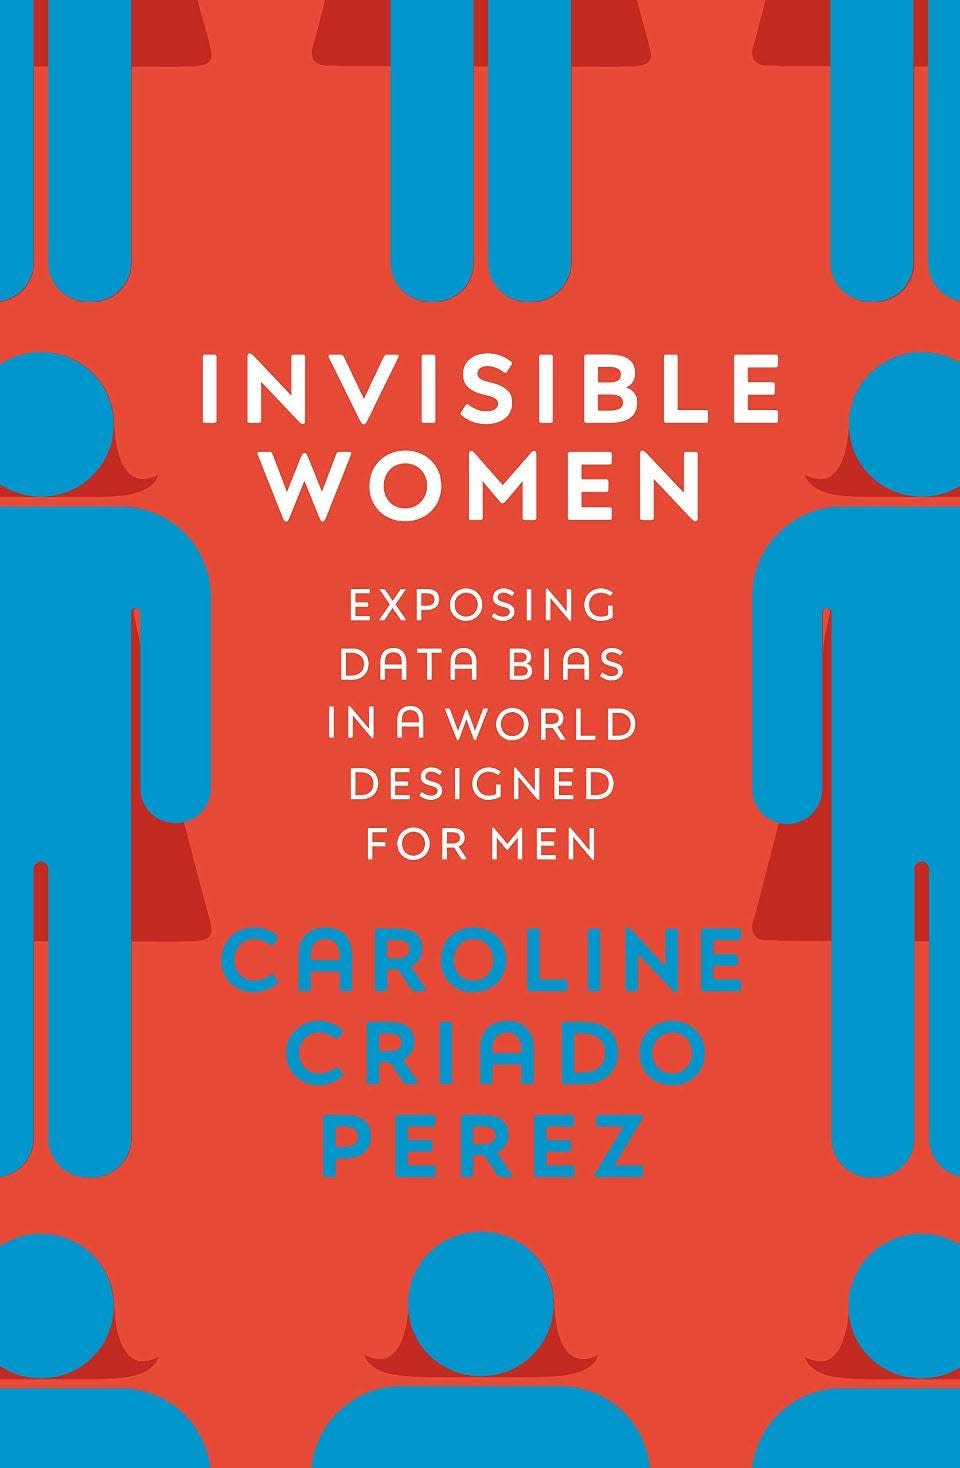  “Invisible Women” by Caroline Criado Perez 